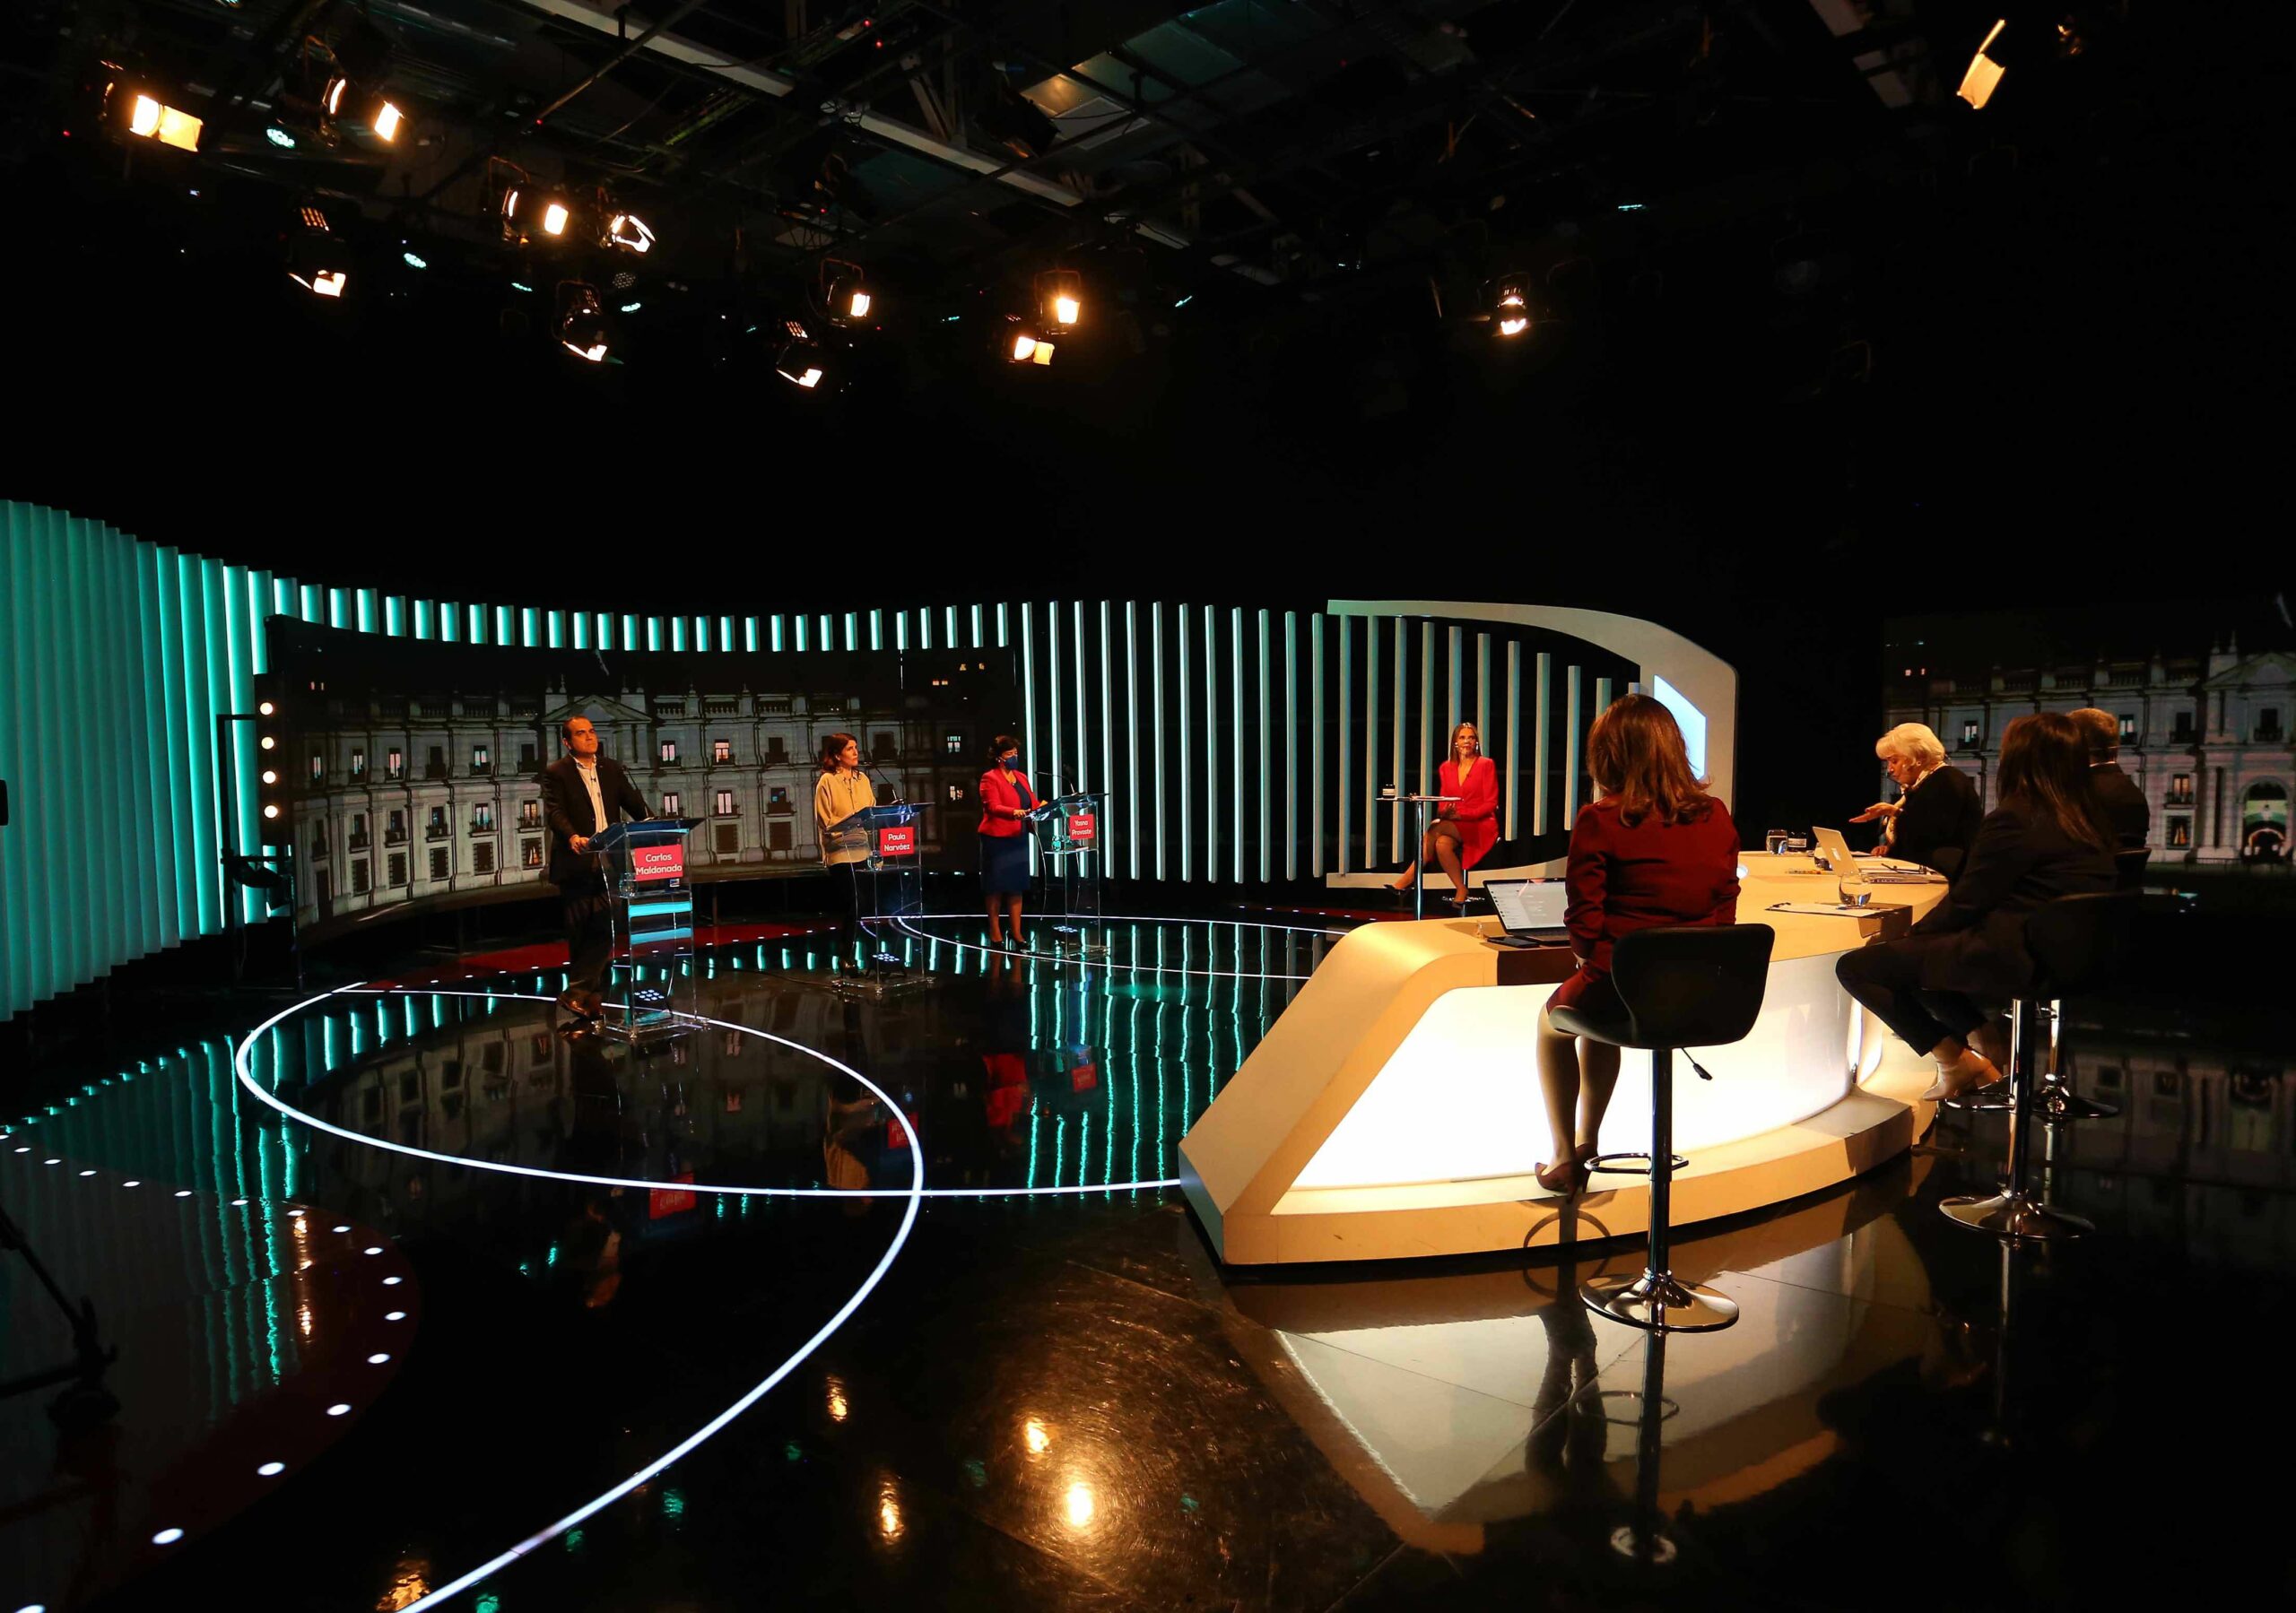 Estudio de televisión con candidatos presidenciales de Unidad Constituyente, que participan de un debate organizado por un canal de televisión.